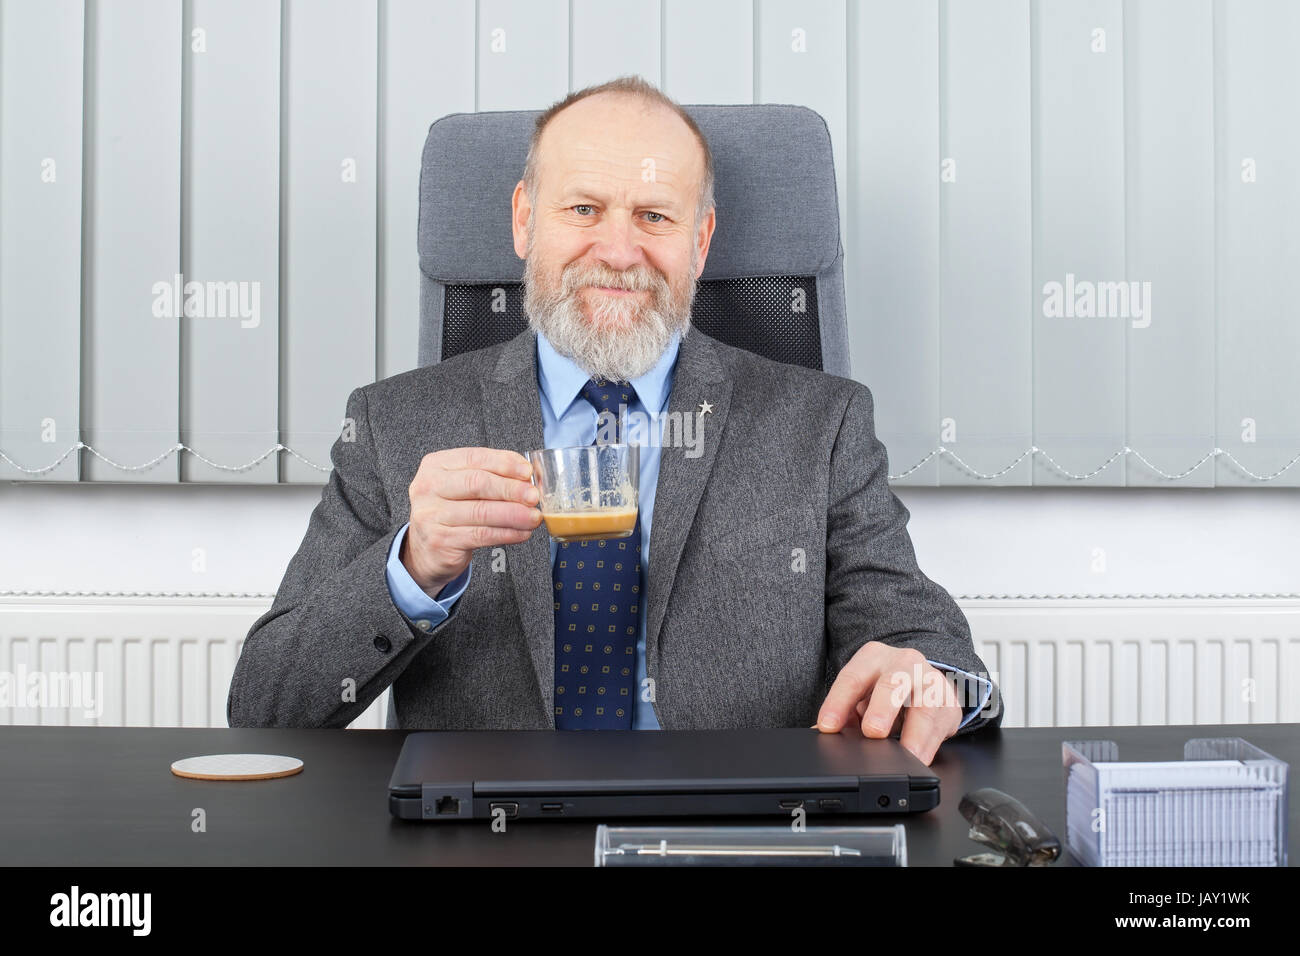 Bild von einem nachdenklichen Manager in einer Kaffeepause im Büro Stockfoto